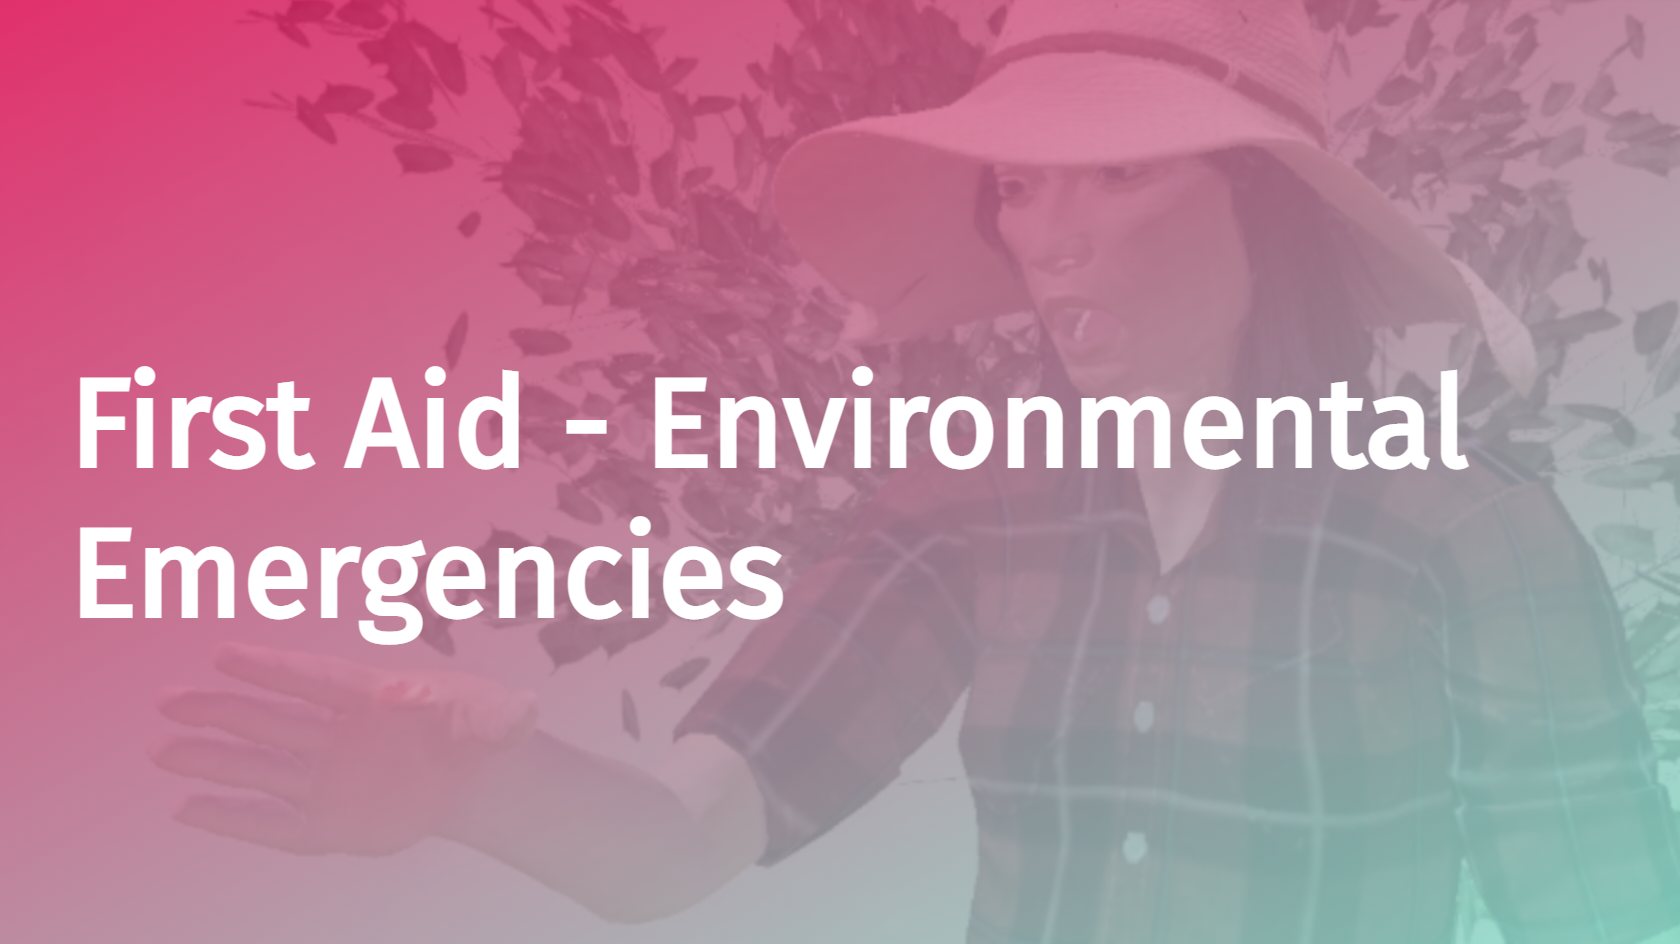 First Aid - Environmental Emergencies